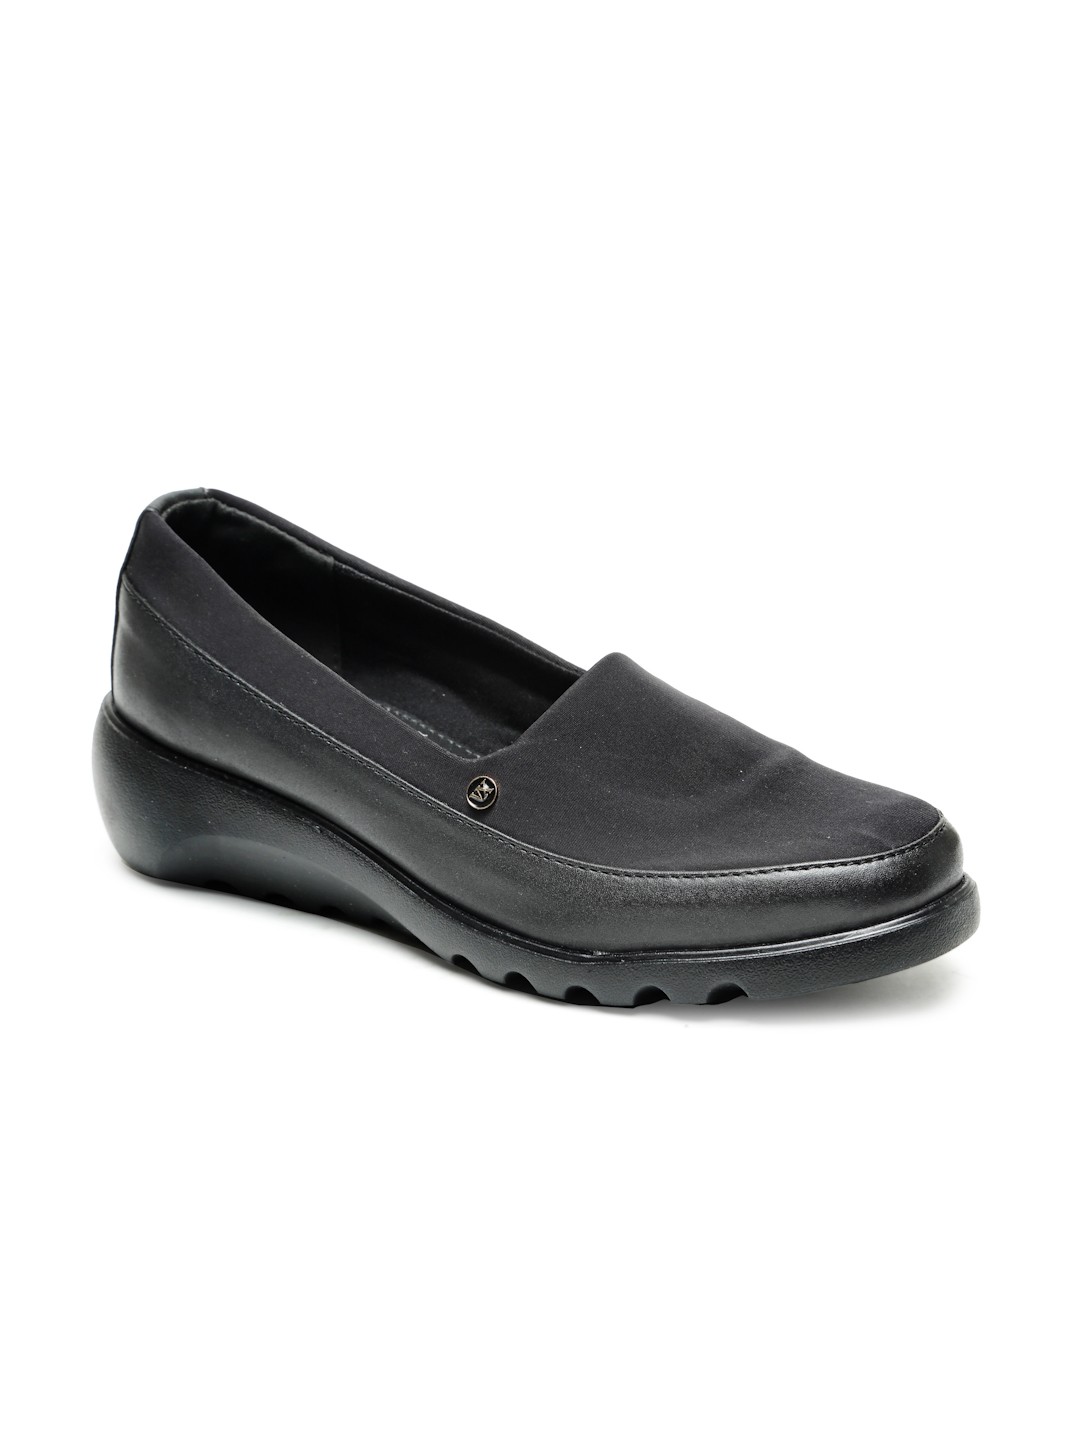 Buy Von Wellx Germany Comfort Women's Black Casual Shoes Elsa Online in Meerut